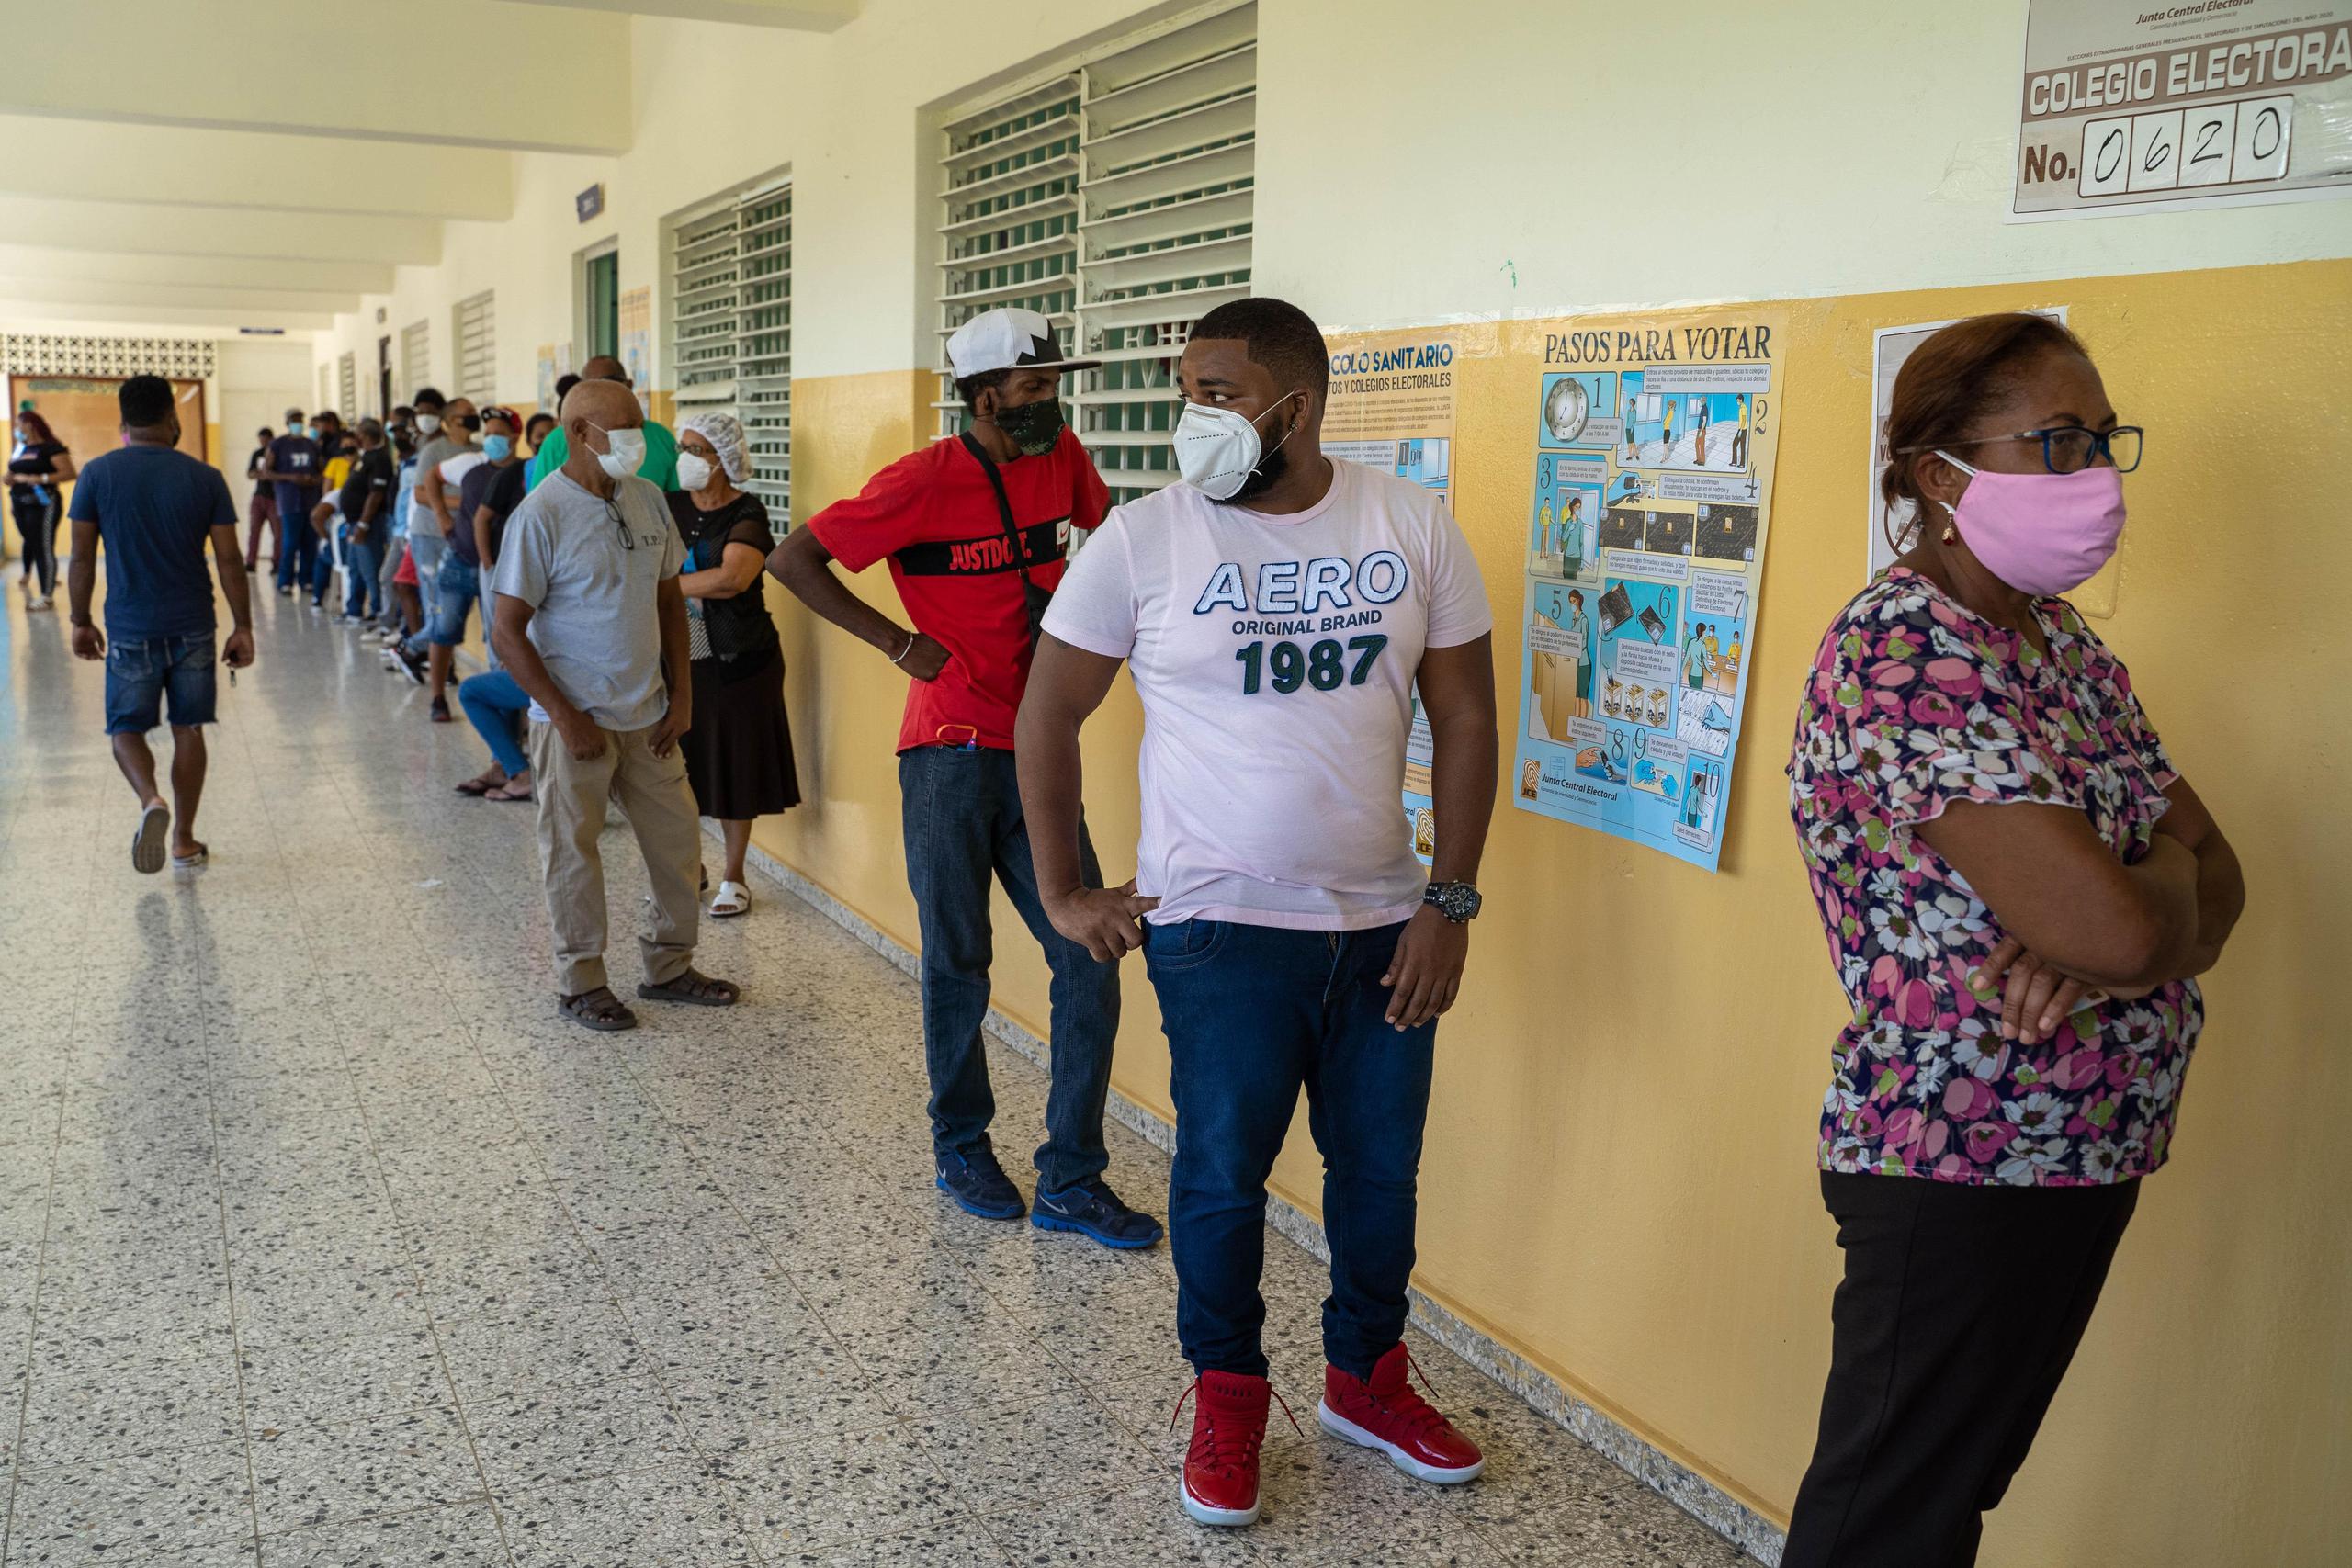 Unos 7.5 millones de dominicanos están habilitados para ejercer el voto en 4,326 recintos electorales.